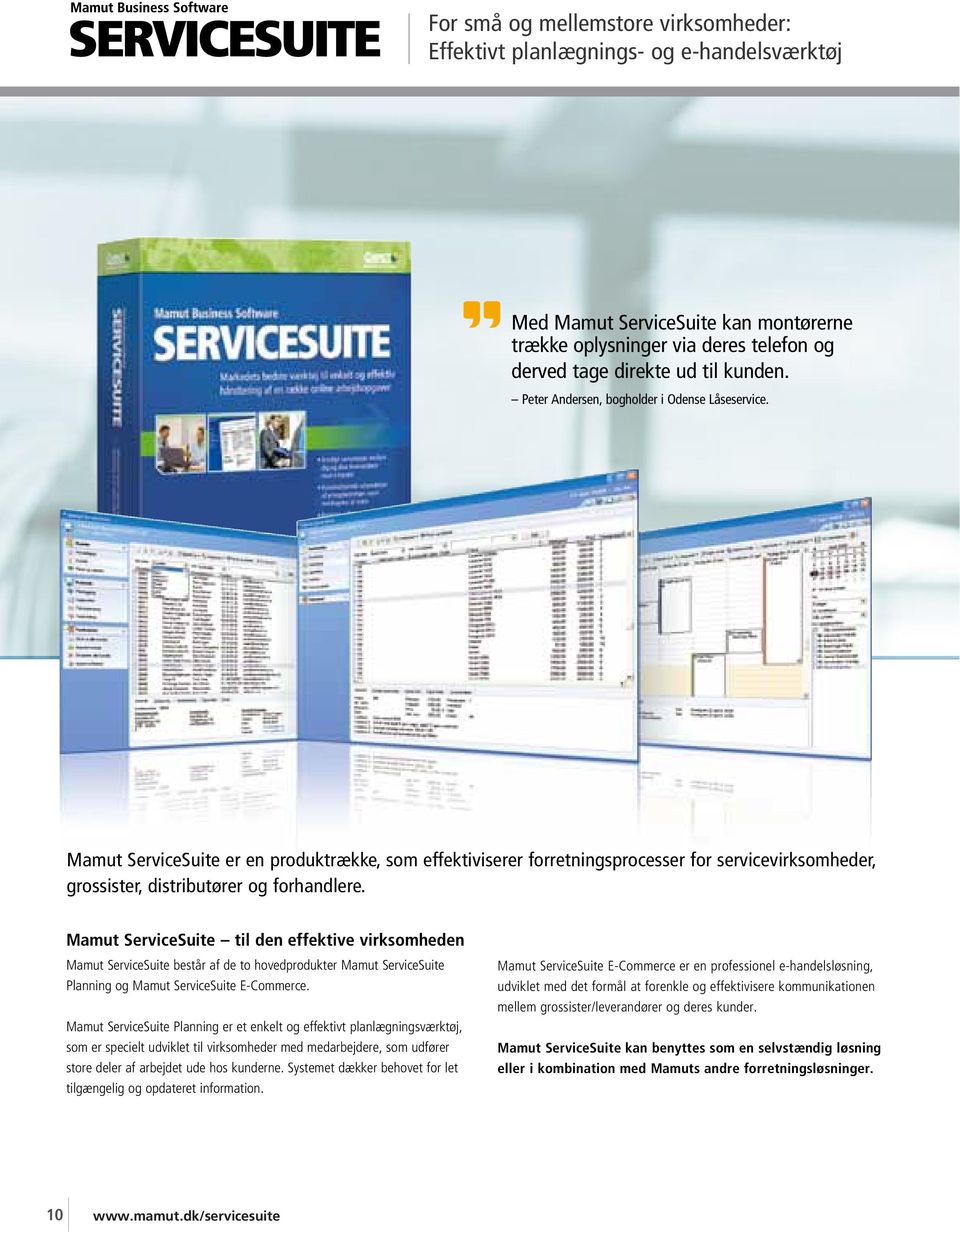 Mamut ServiceSuite til den effektive virksomheden Mamut ServiceSuite består af de to hovedprodukter Mamut ServiceSuite Planning og Mamut ServiceSuite E-Commerce.